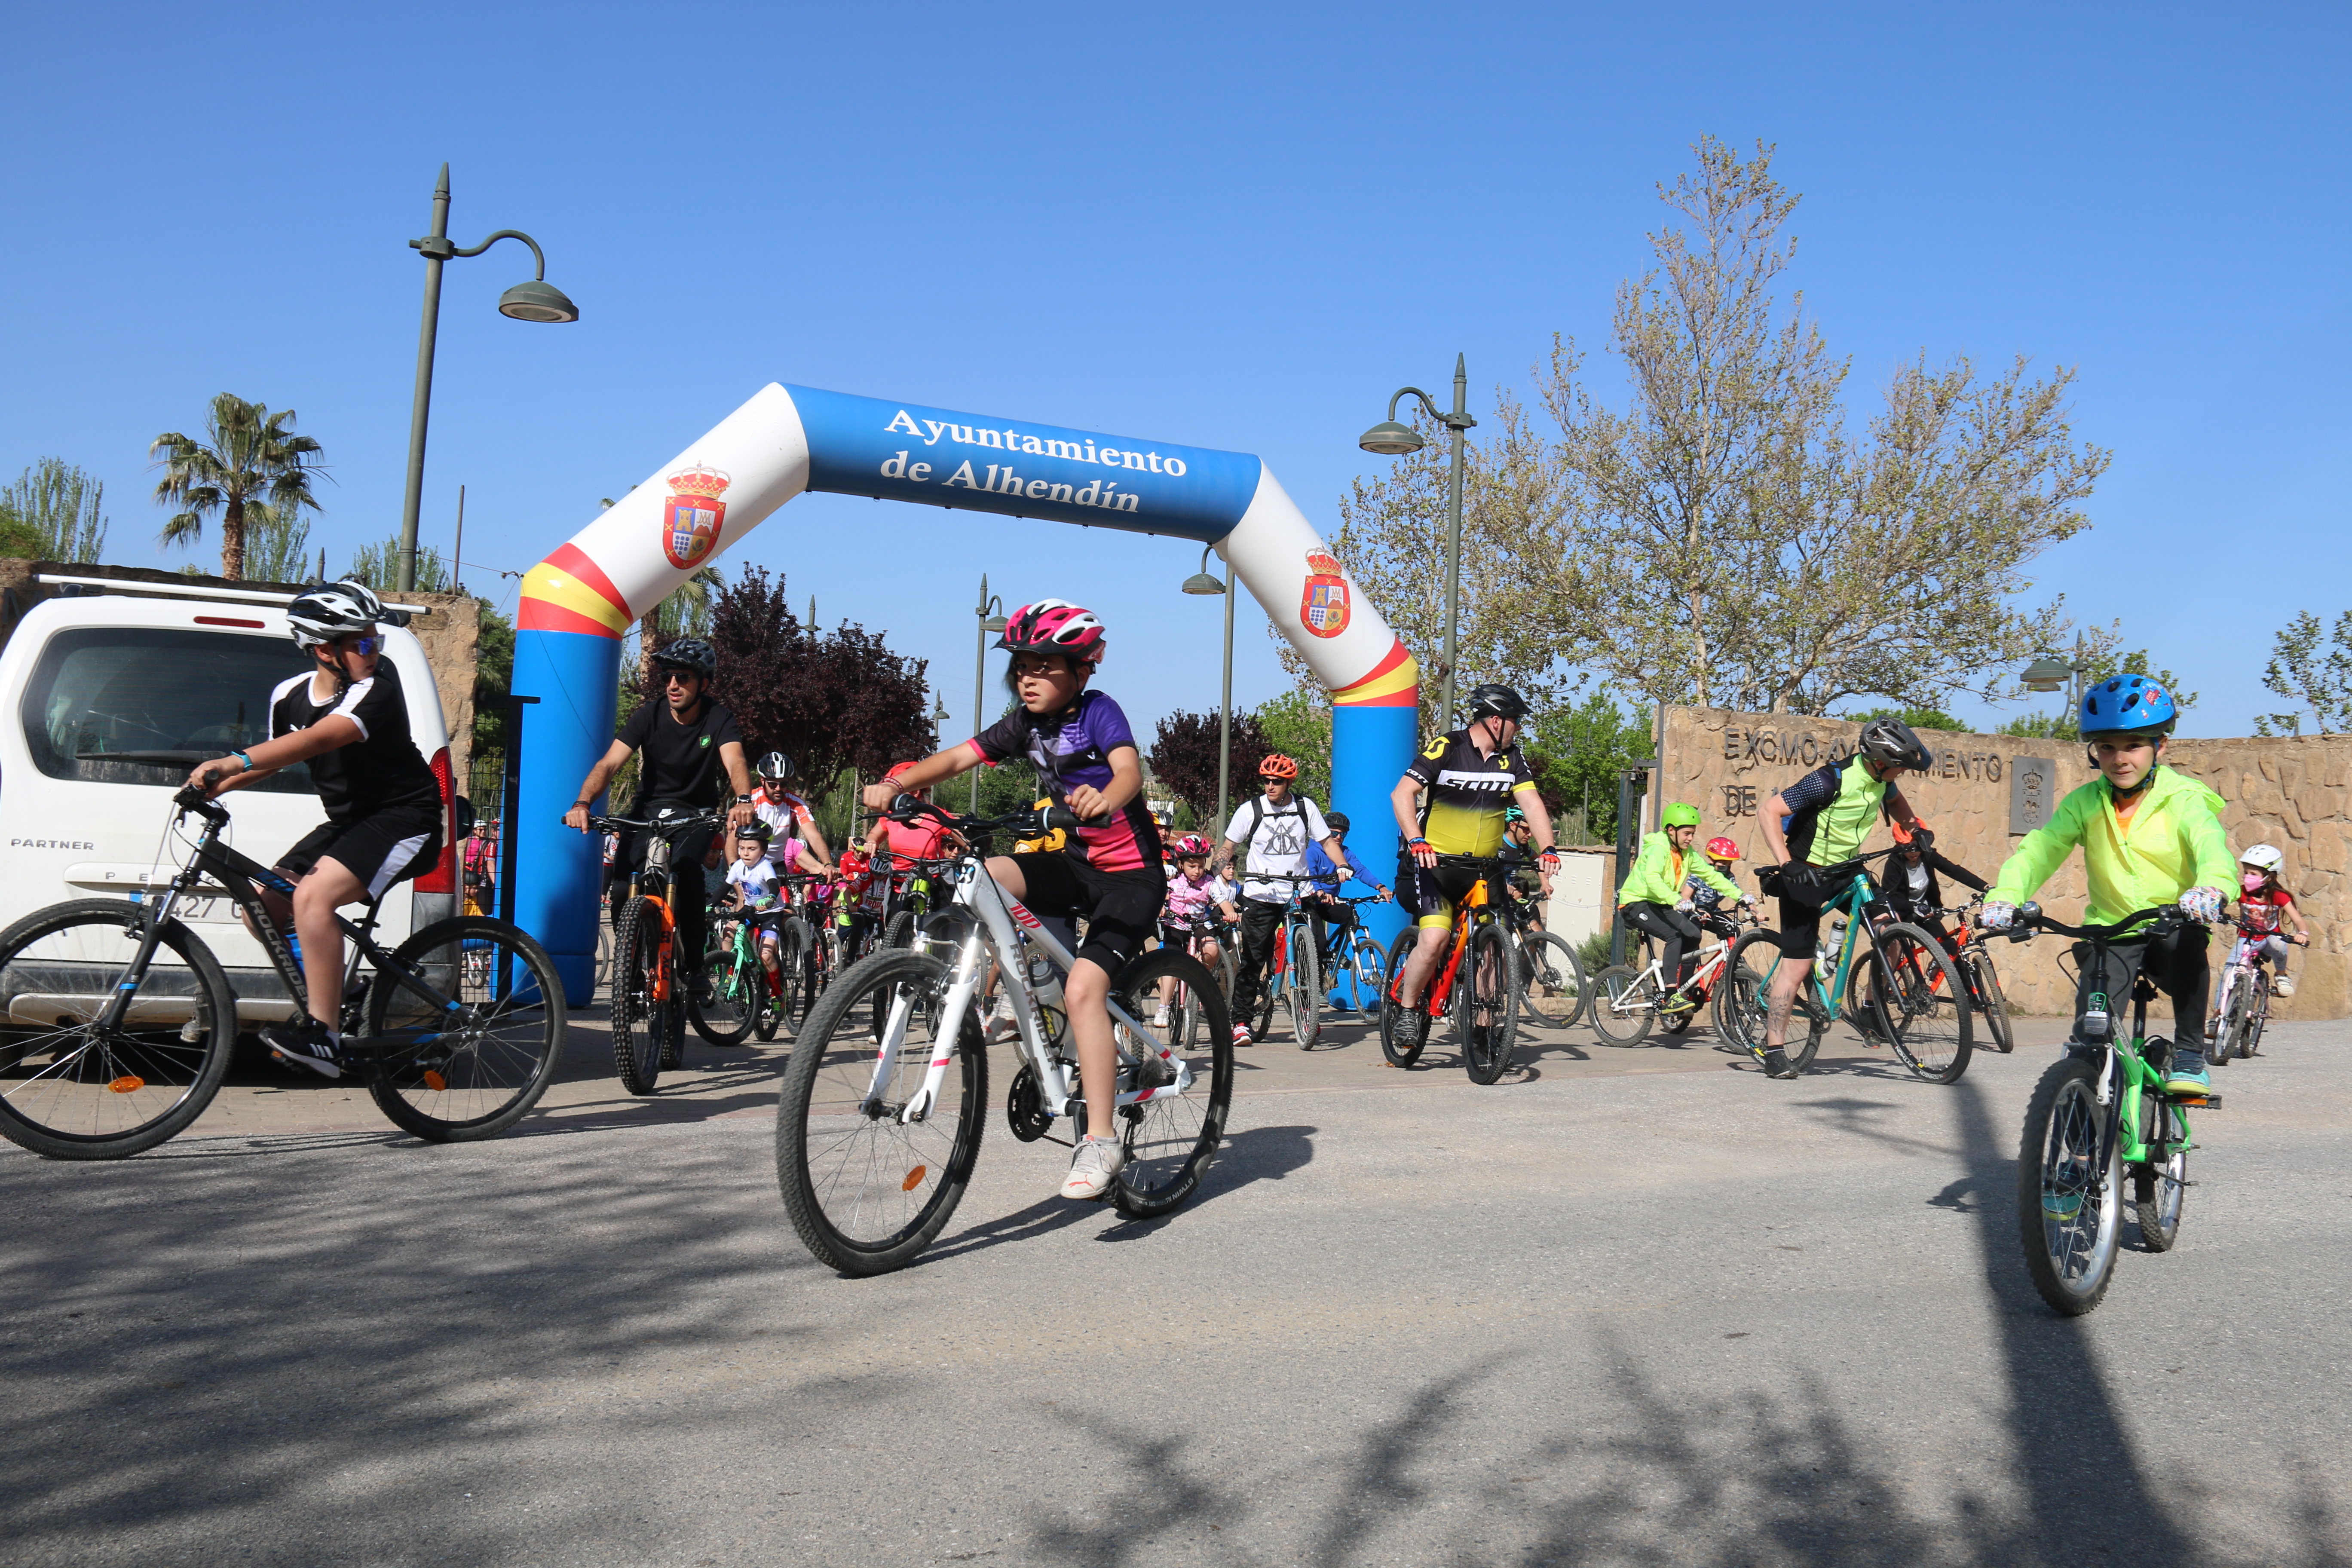 Más de 300 personas celebran en Alhendín el Día de la Bicicleta